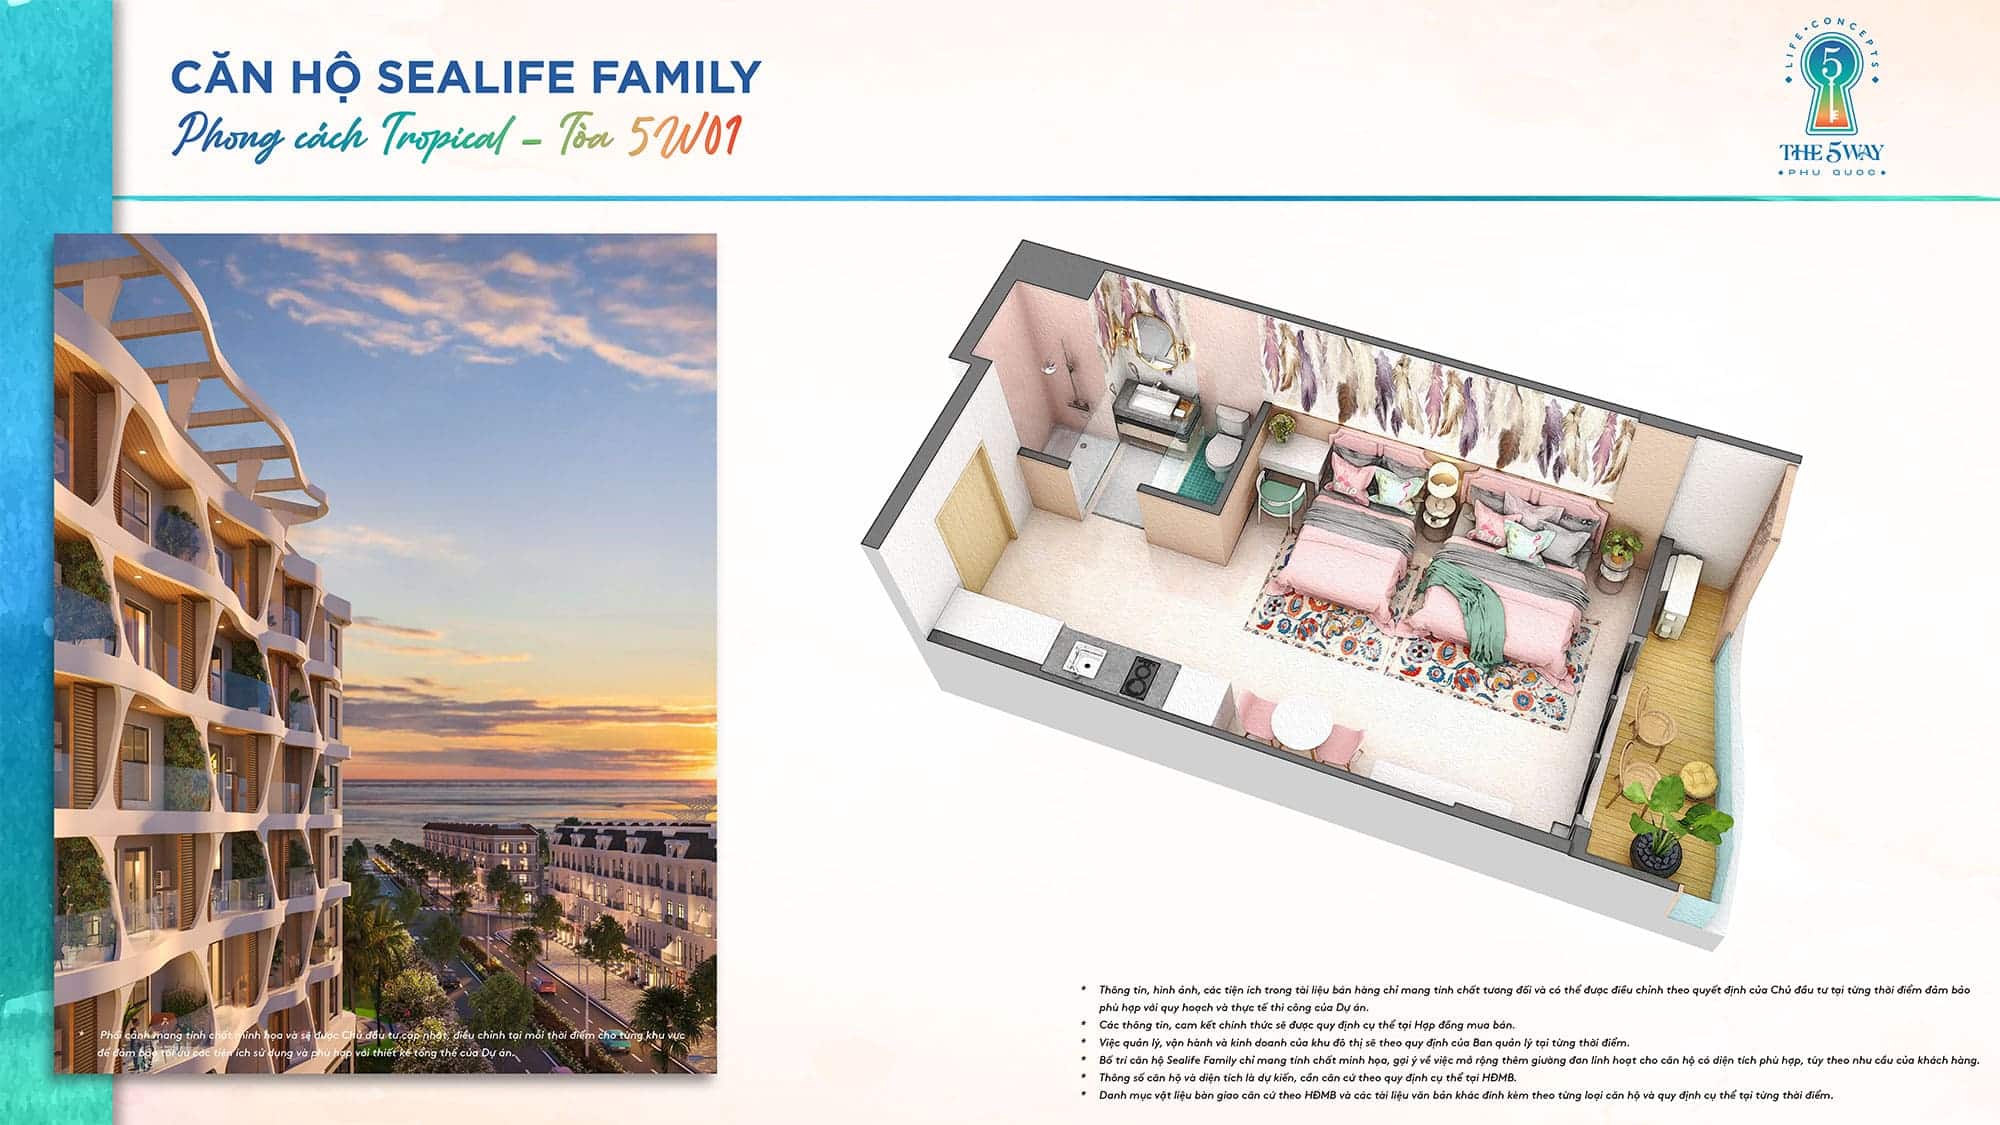 Layout bóc mái căn hộ Sealife Family, Tòa 5W01 phong cách Tropical thuộc dự án The 5Way - Life Concepts.